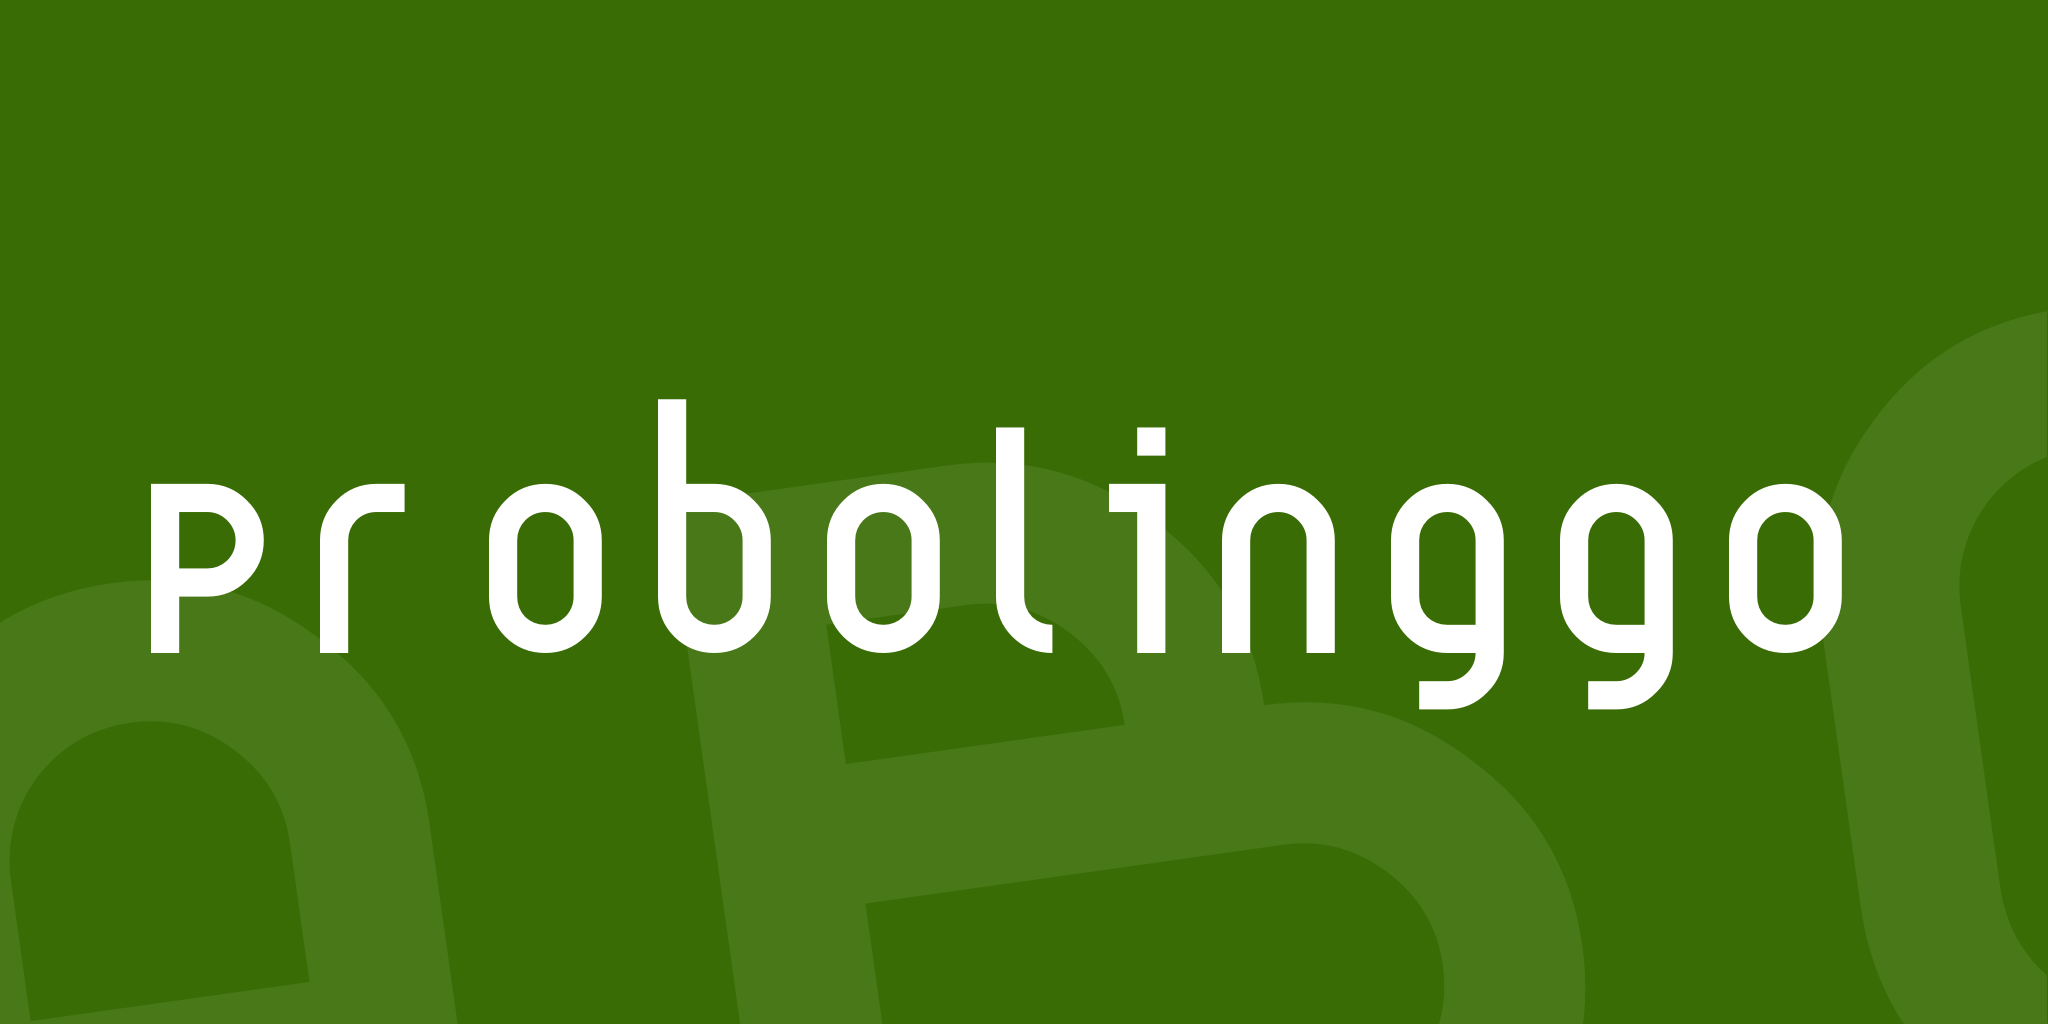 Probolinggo